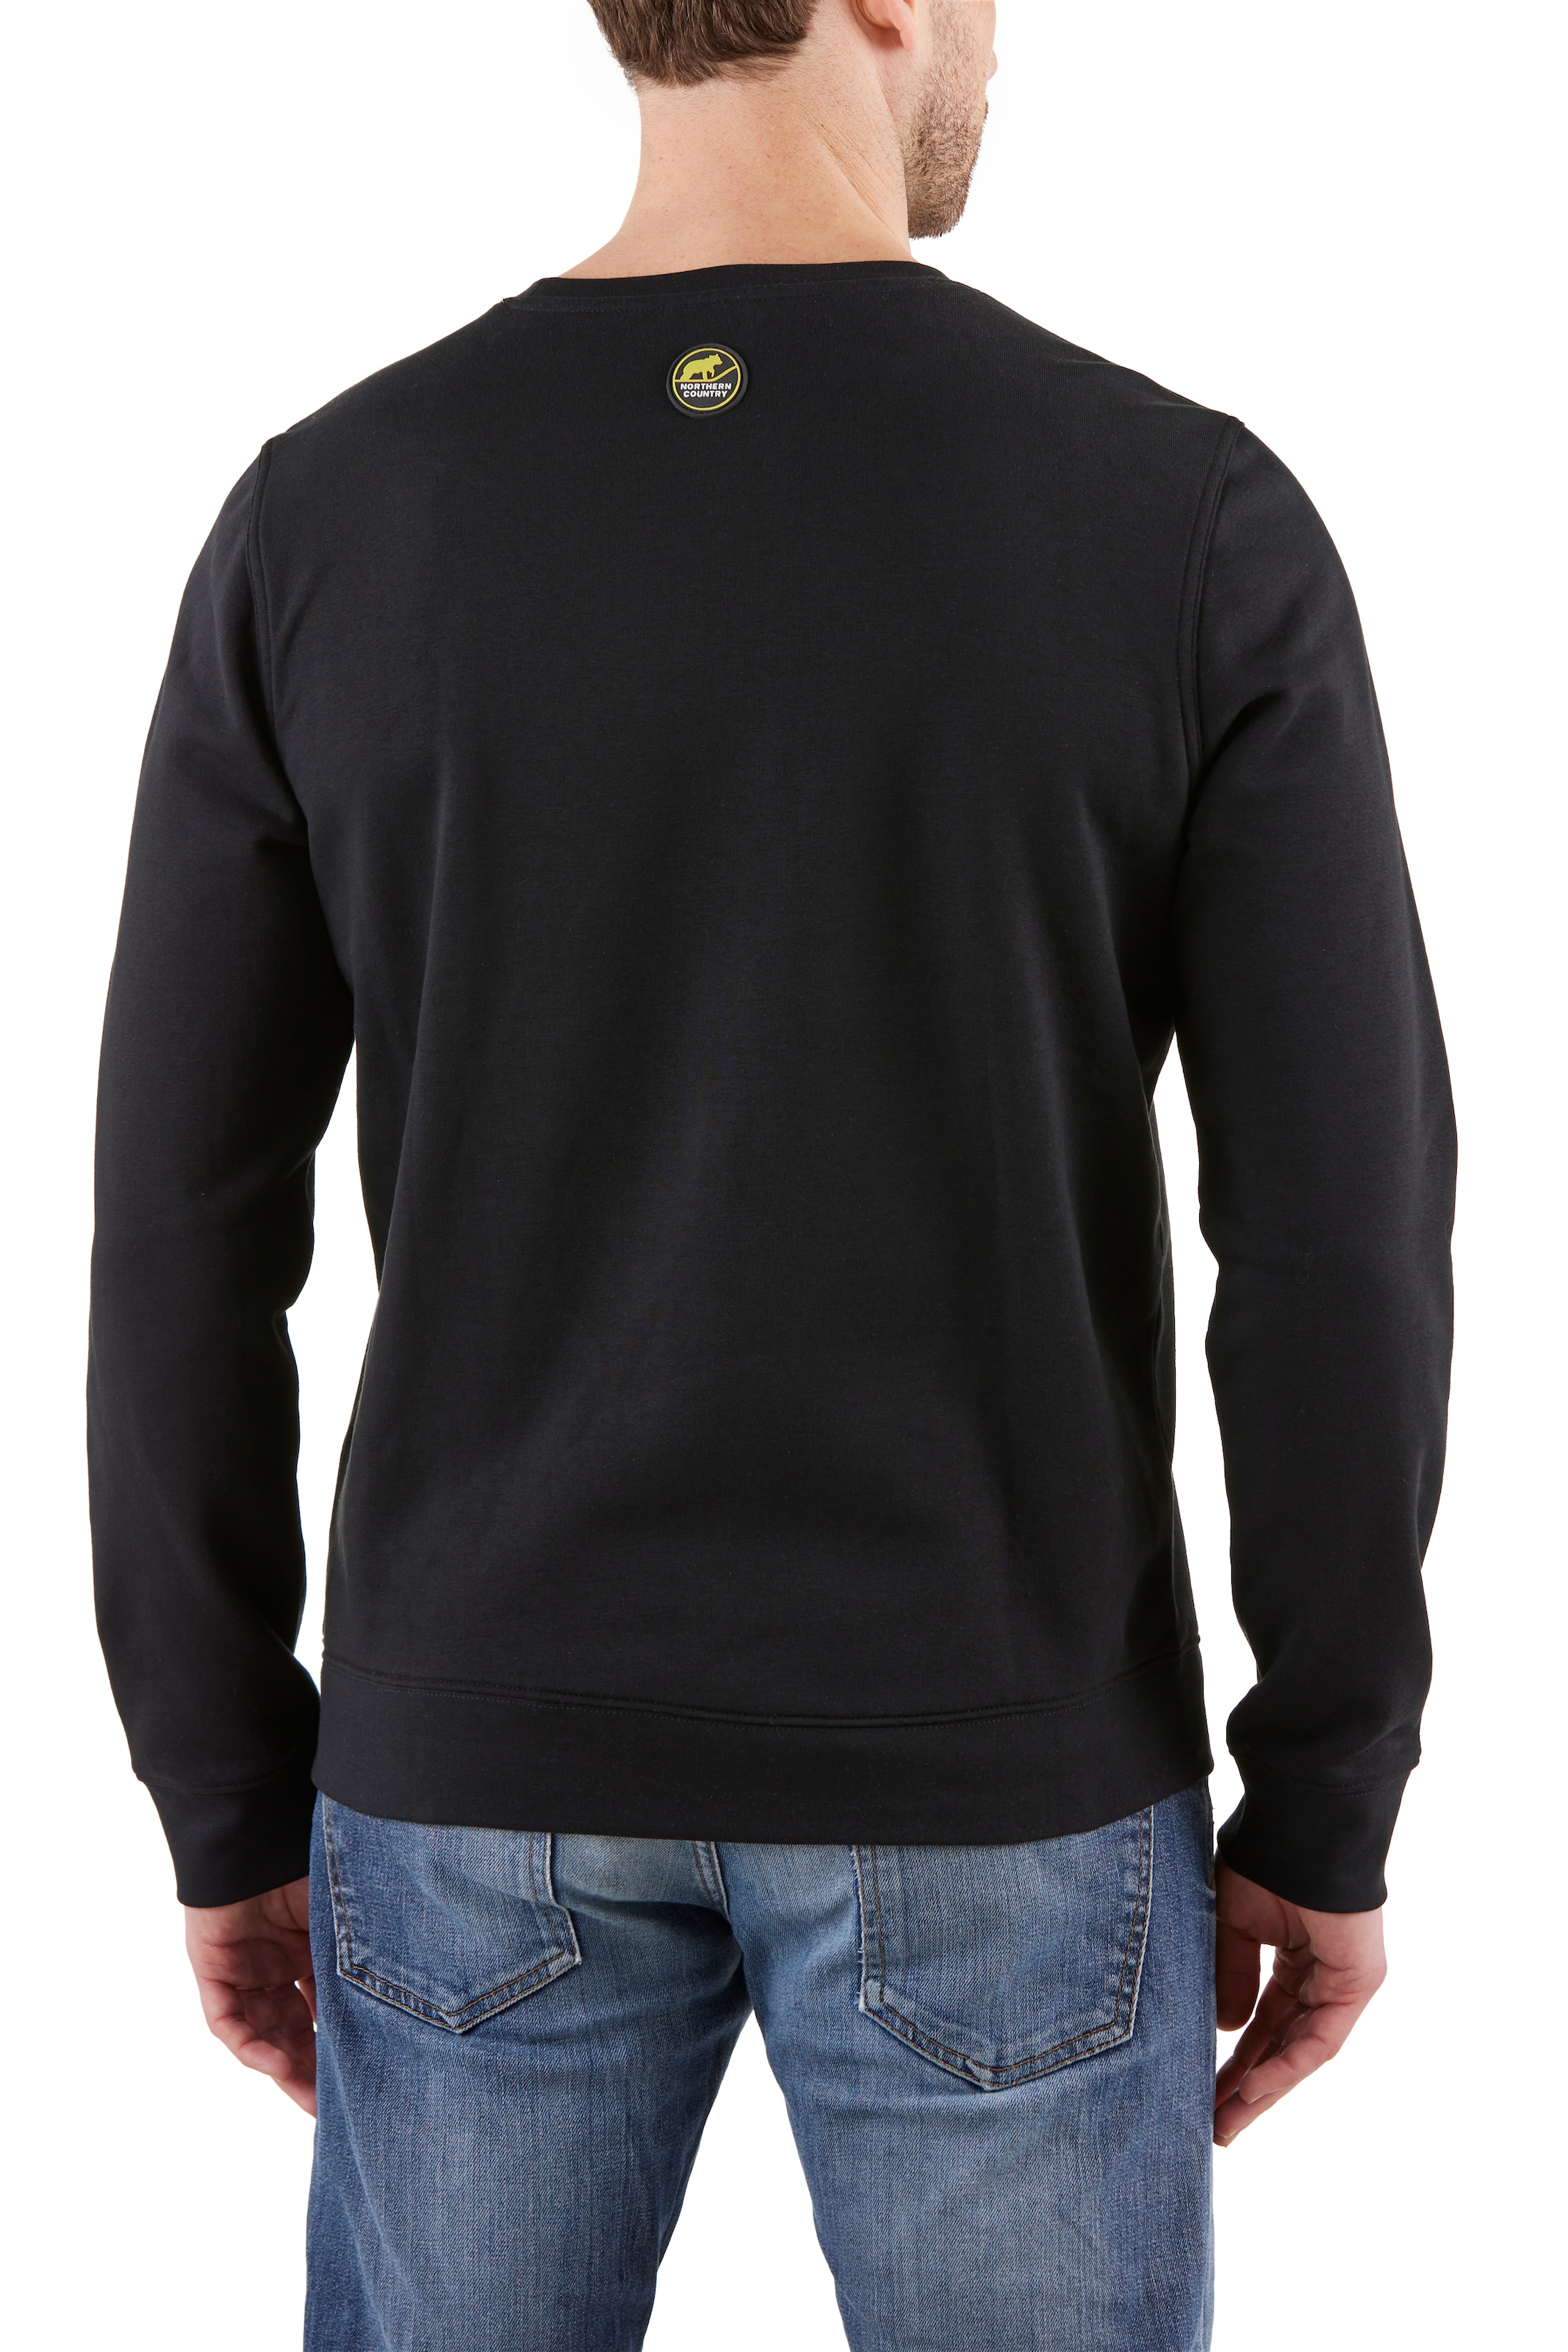 Northern Country Sweatshirt, Passform, shoppen zum Sweatware bei leichte Arbeiten, OTTO online klassische